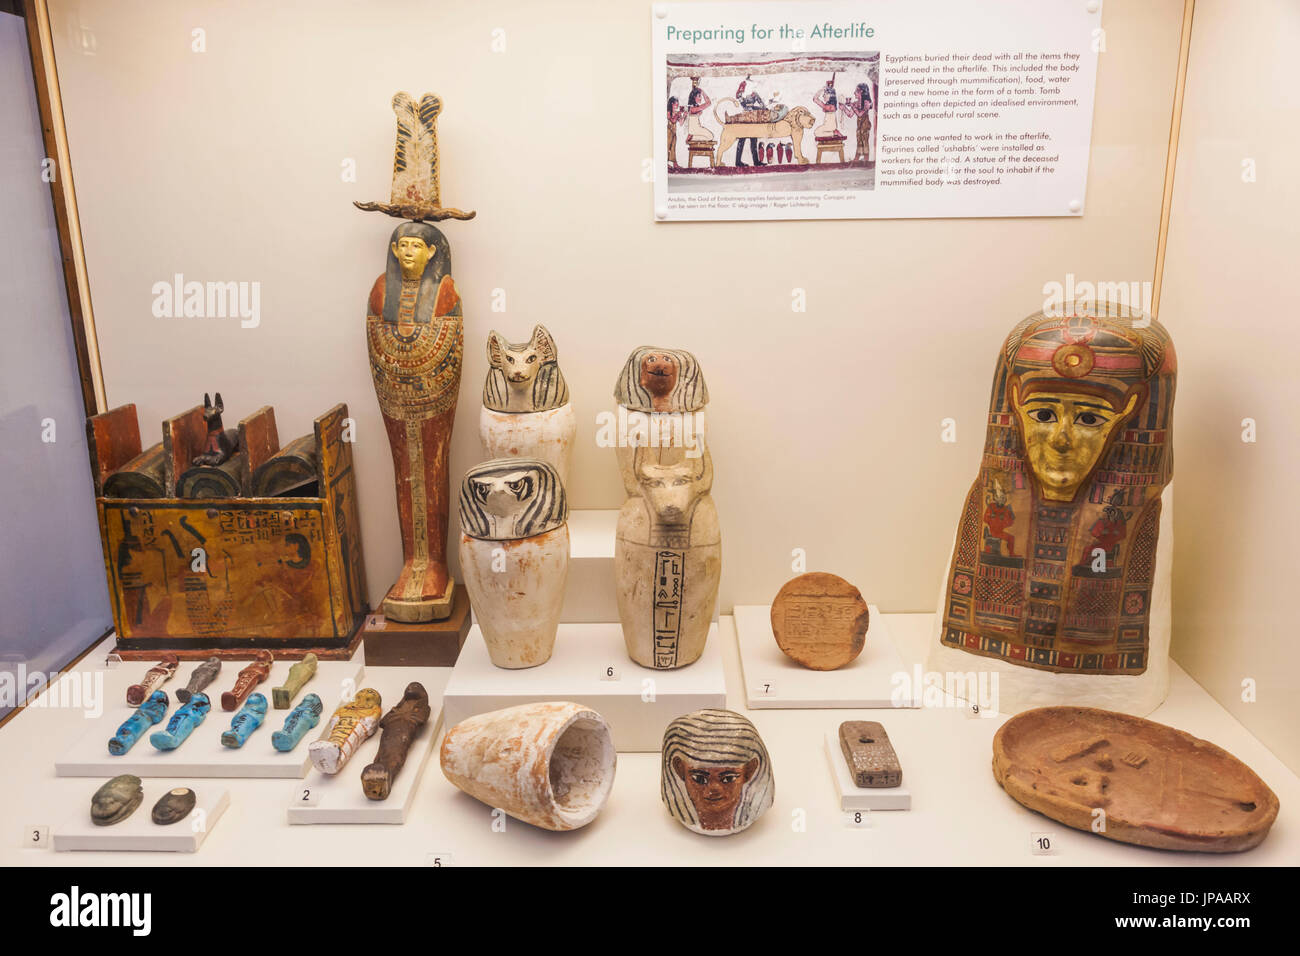 England, West Midlands, Birmingham, Birmingham Museum and Art Gallery, Anzeige der altägyptischen Artefakten in Gräber gelegt, für den Einsatz im Jenseits Stockfoto